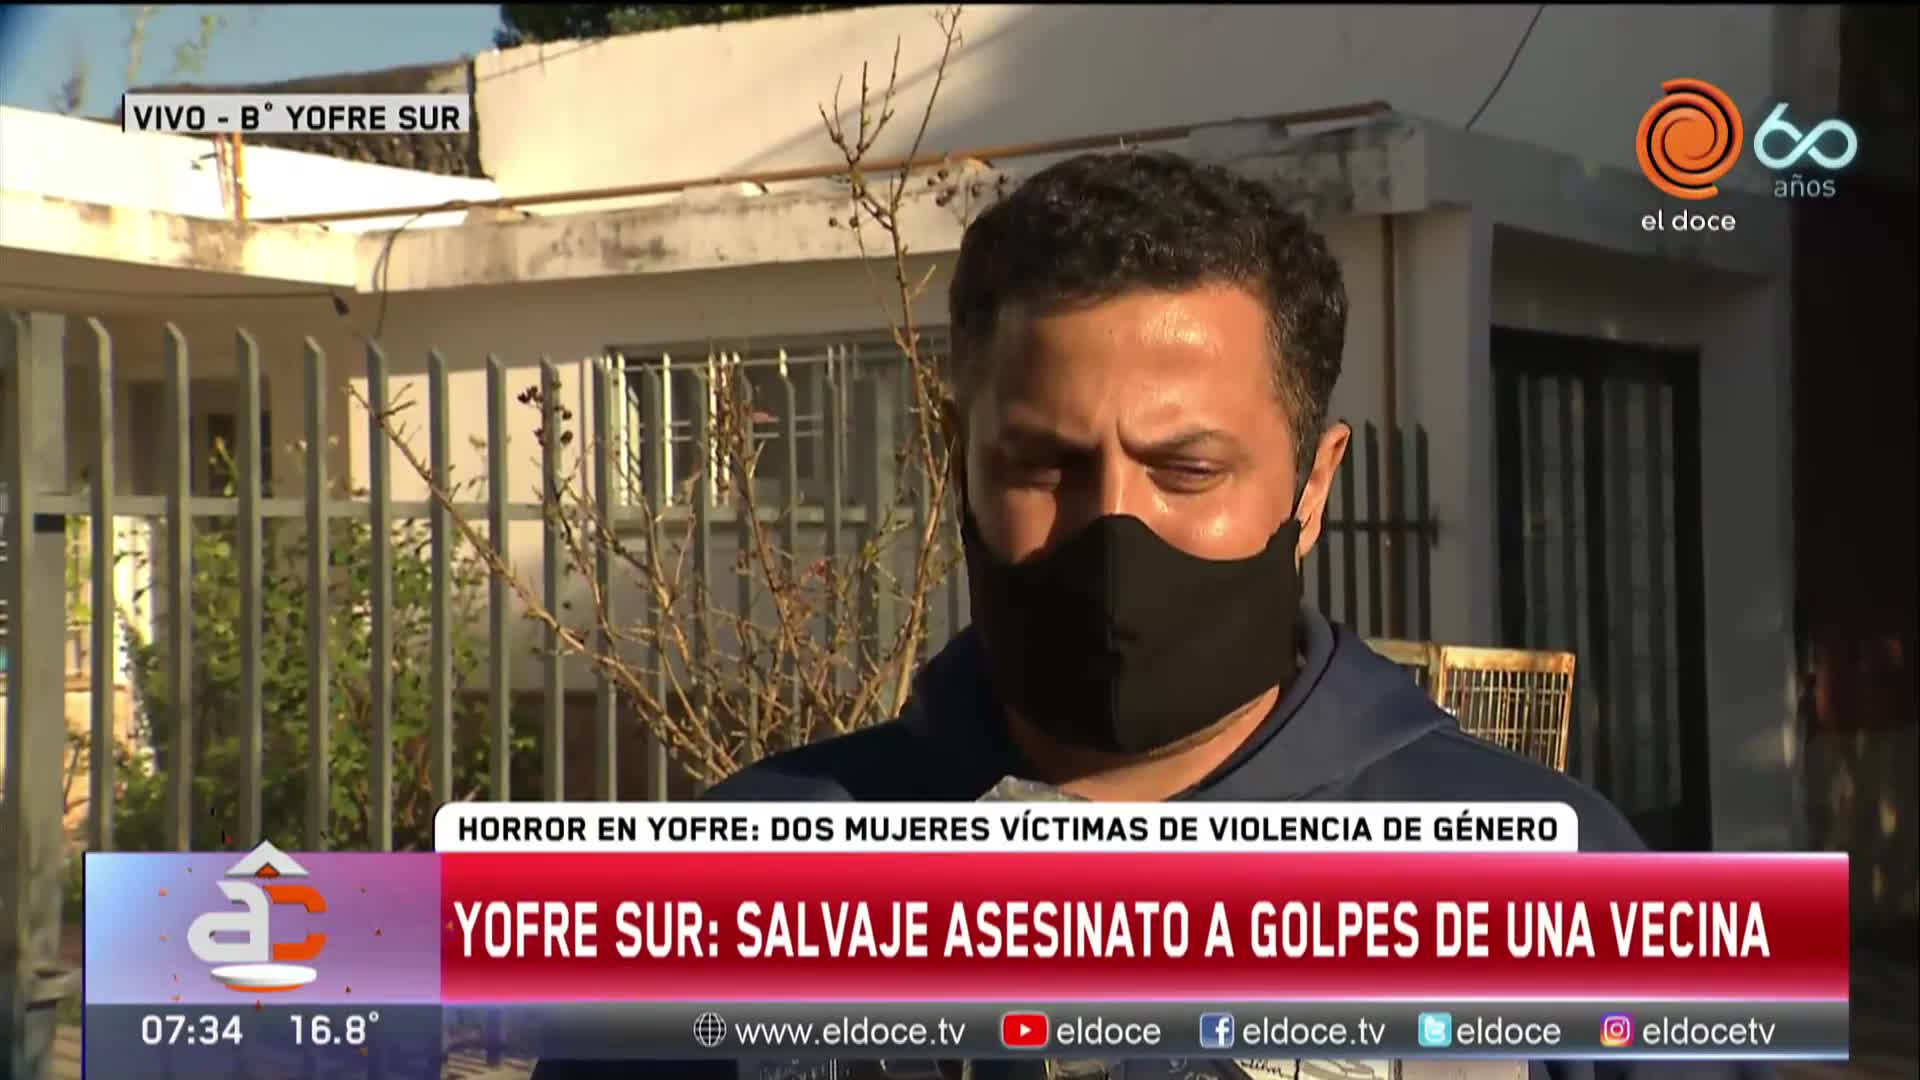 Asesinato en Yofre Sur: "No alcanzaba con una perimetral"